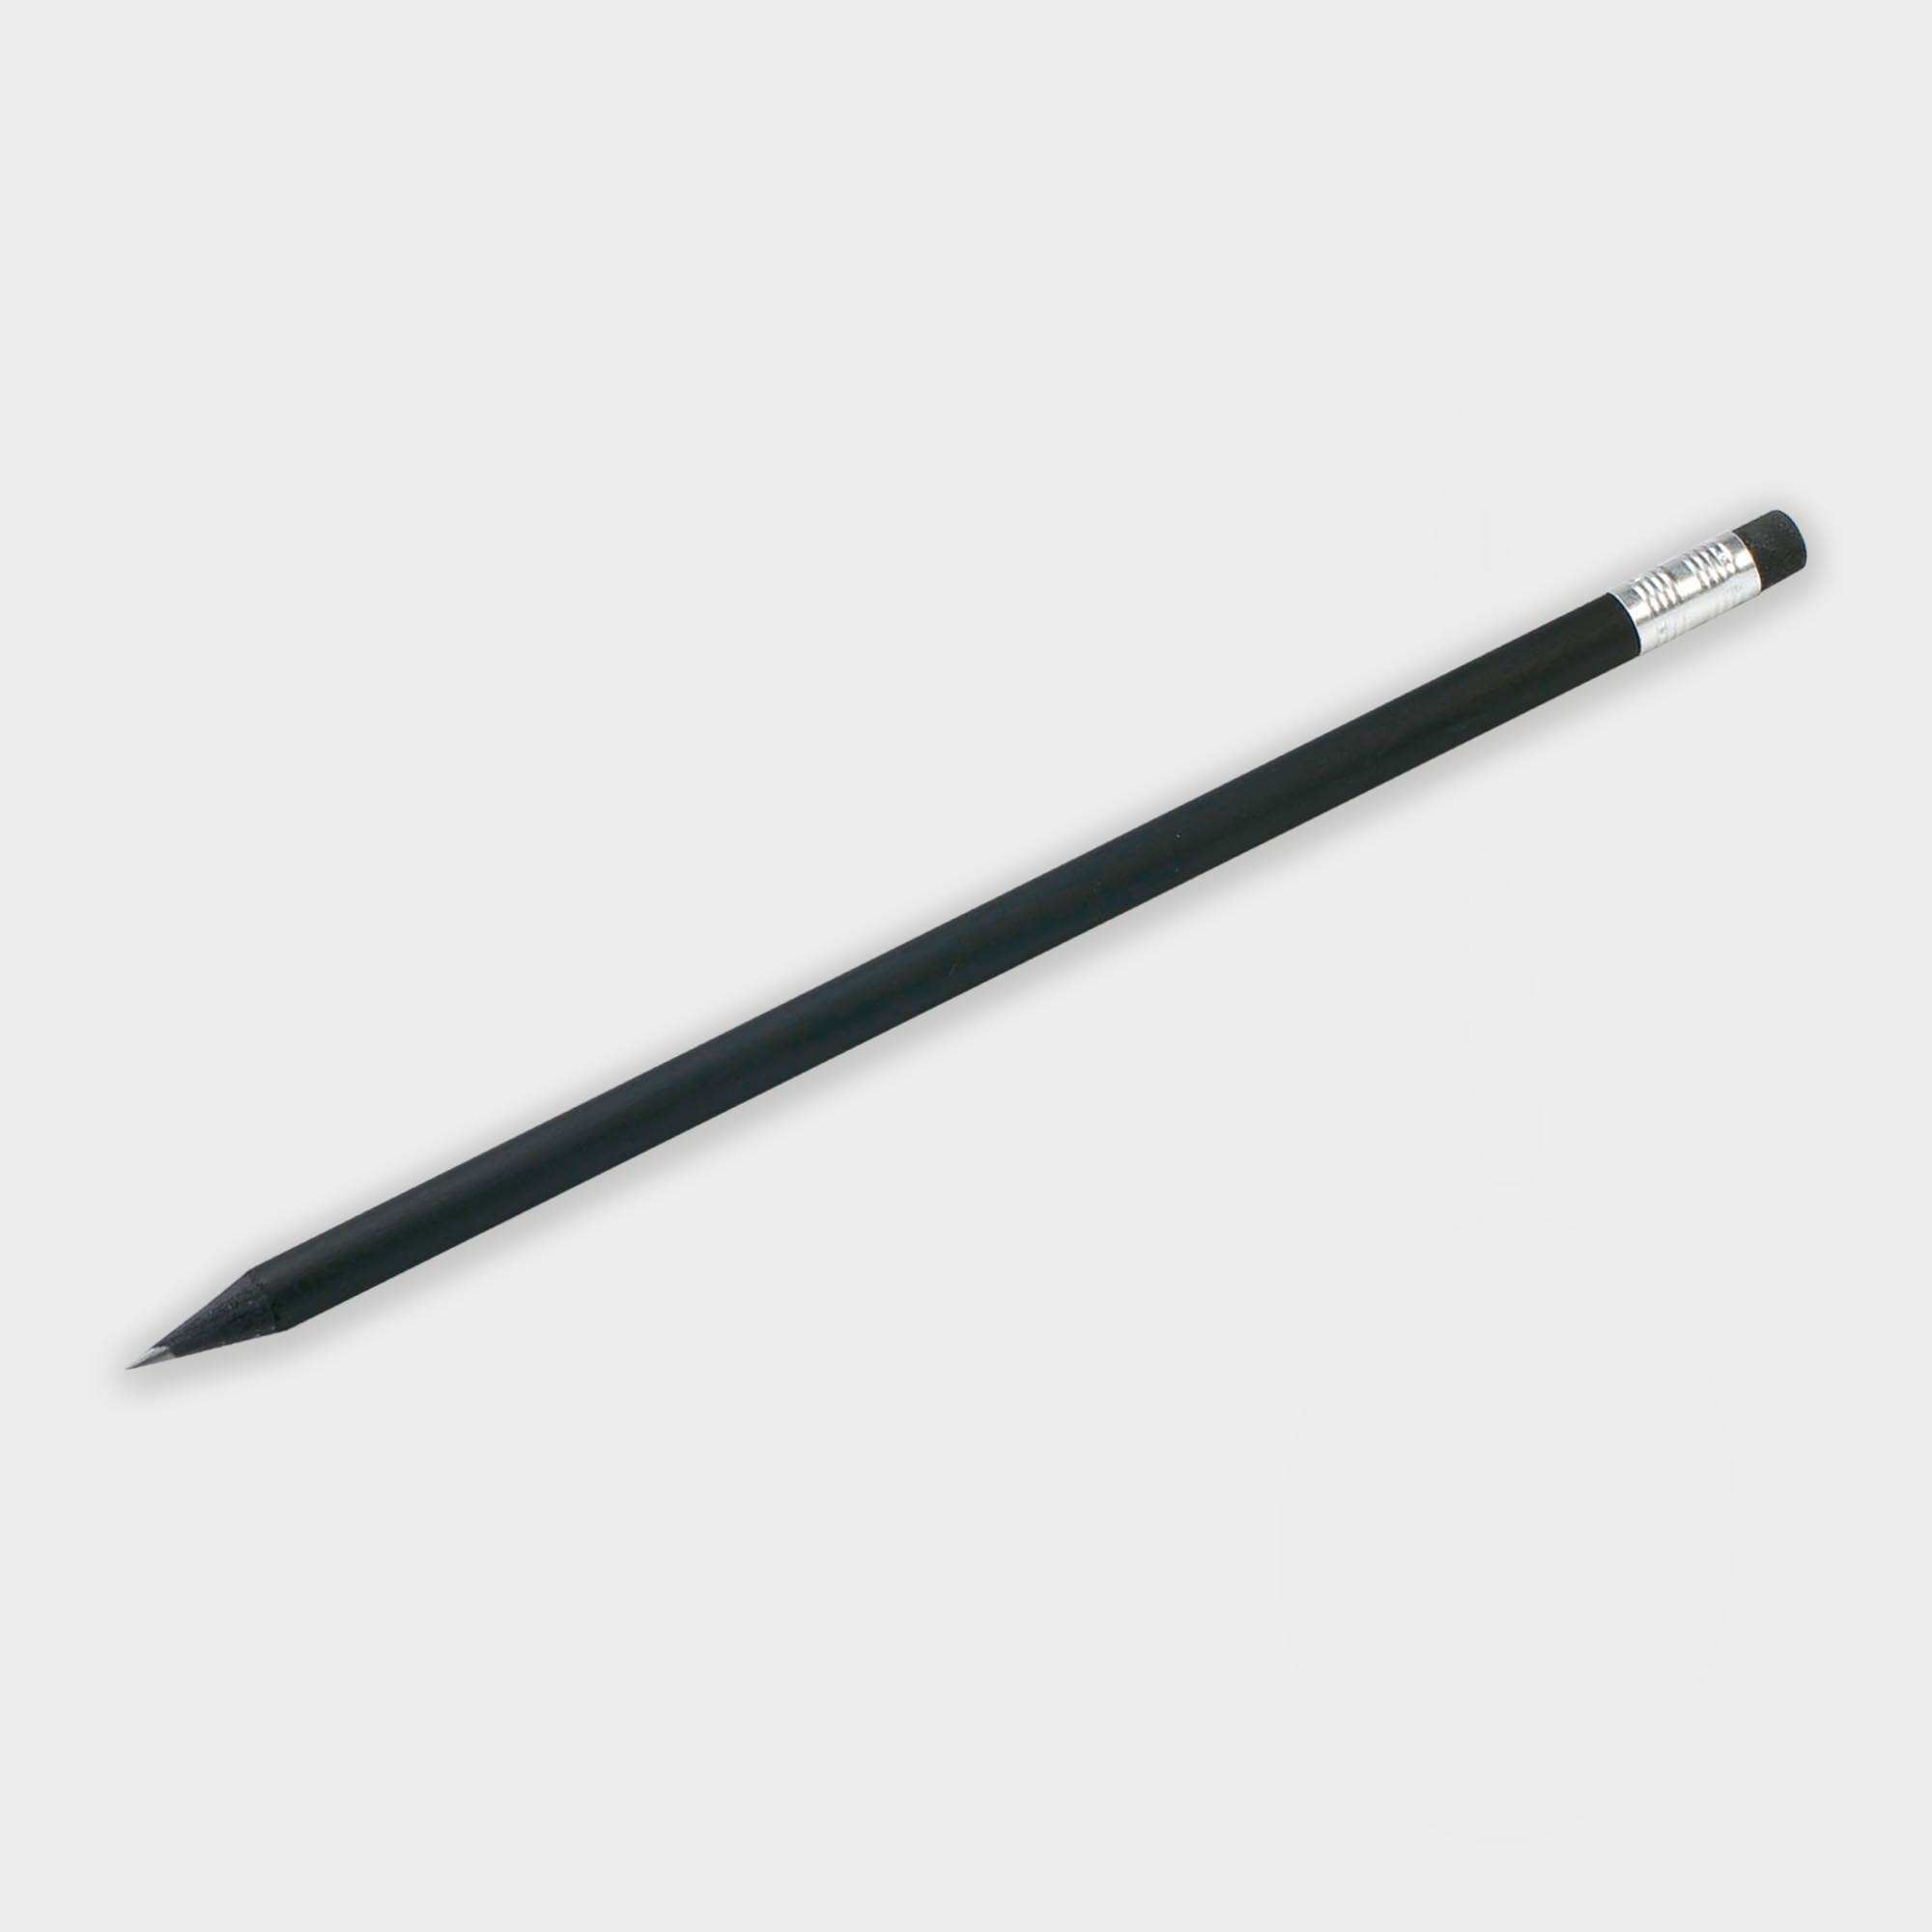 Promotional Wooden Black Pencil with Eraser - FSC